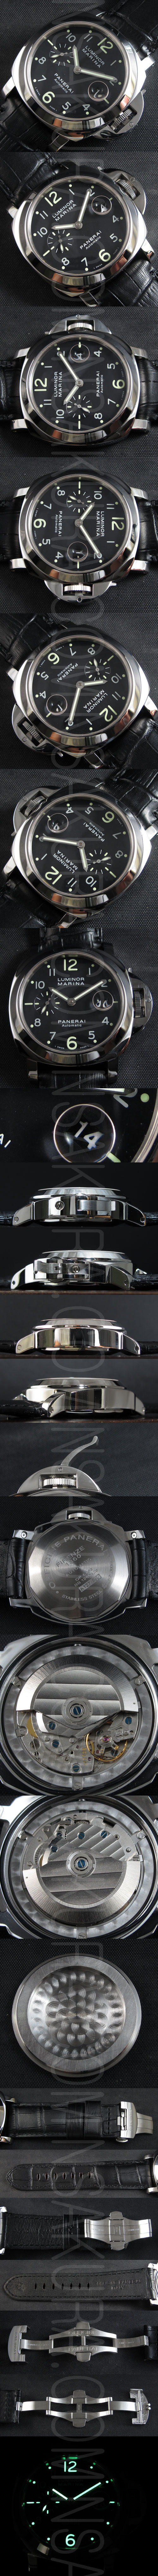 スーパーコピー時計パネライ ルミノール マリーナ PAM301　，ハイエンドモデル - ウインドウを閉じる